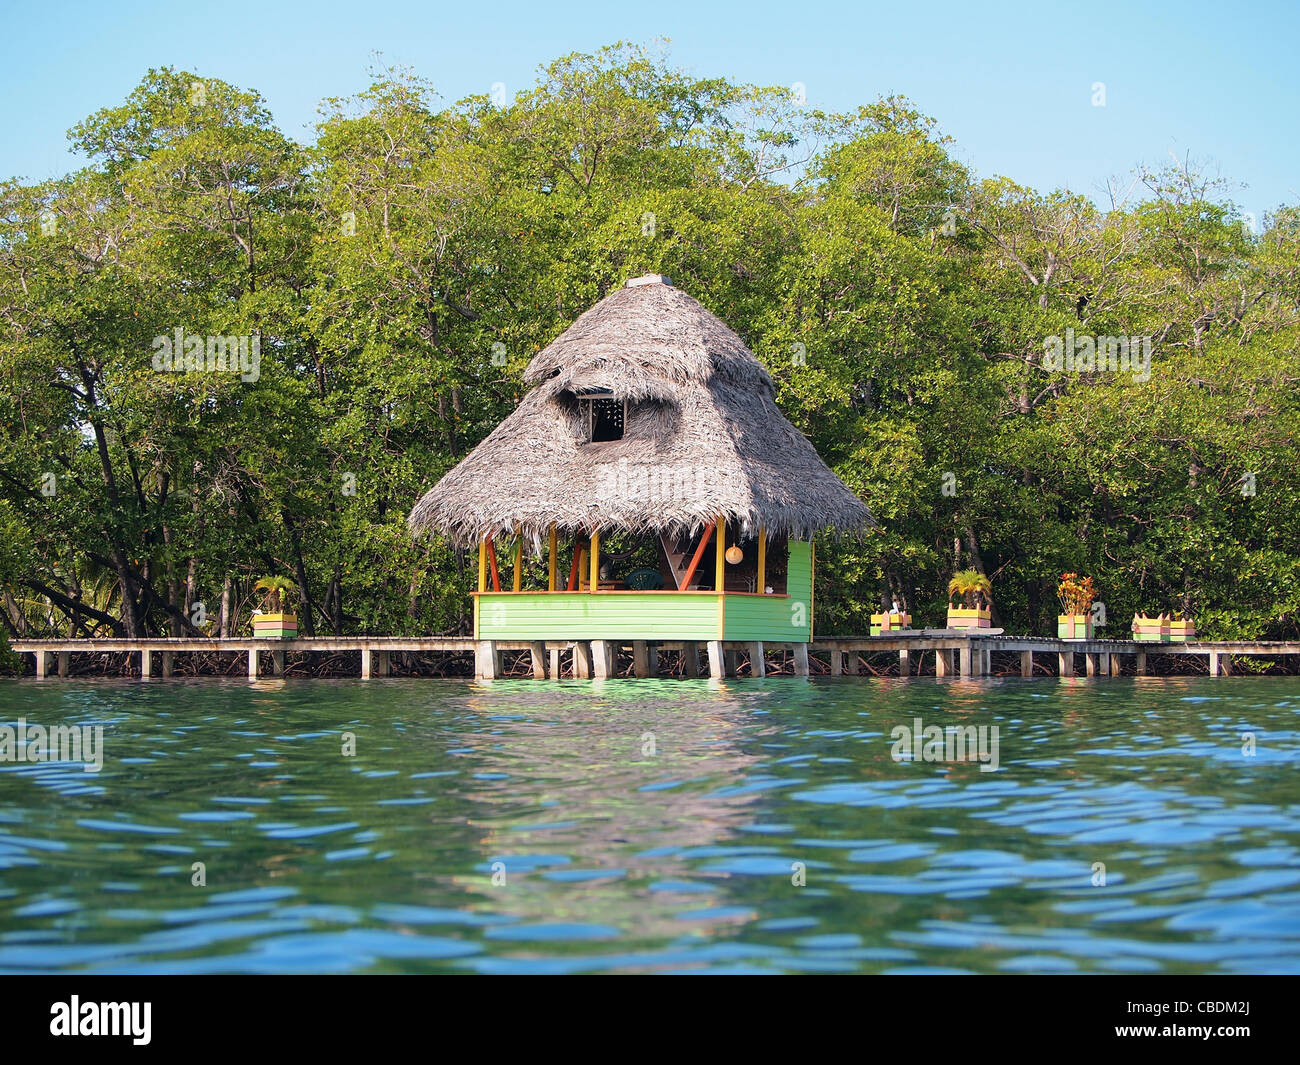 Tropische strohgedeckten Hütte über Wasser mit üppigen Mangroven im Hintergrund, Karibik, Mittelamerika, Bocas del Toro, Panama Stockfoto